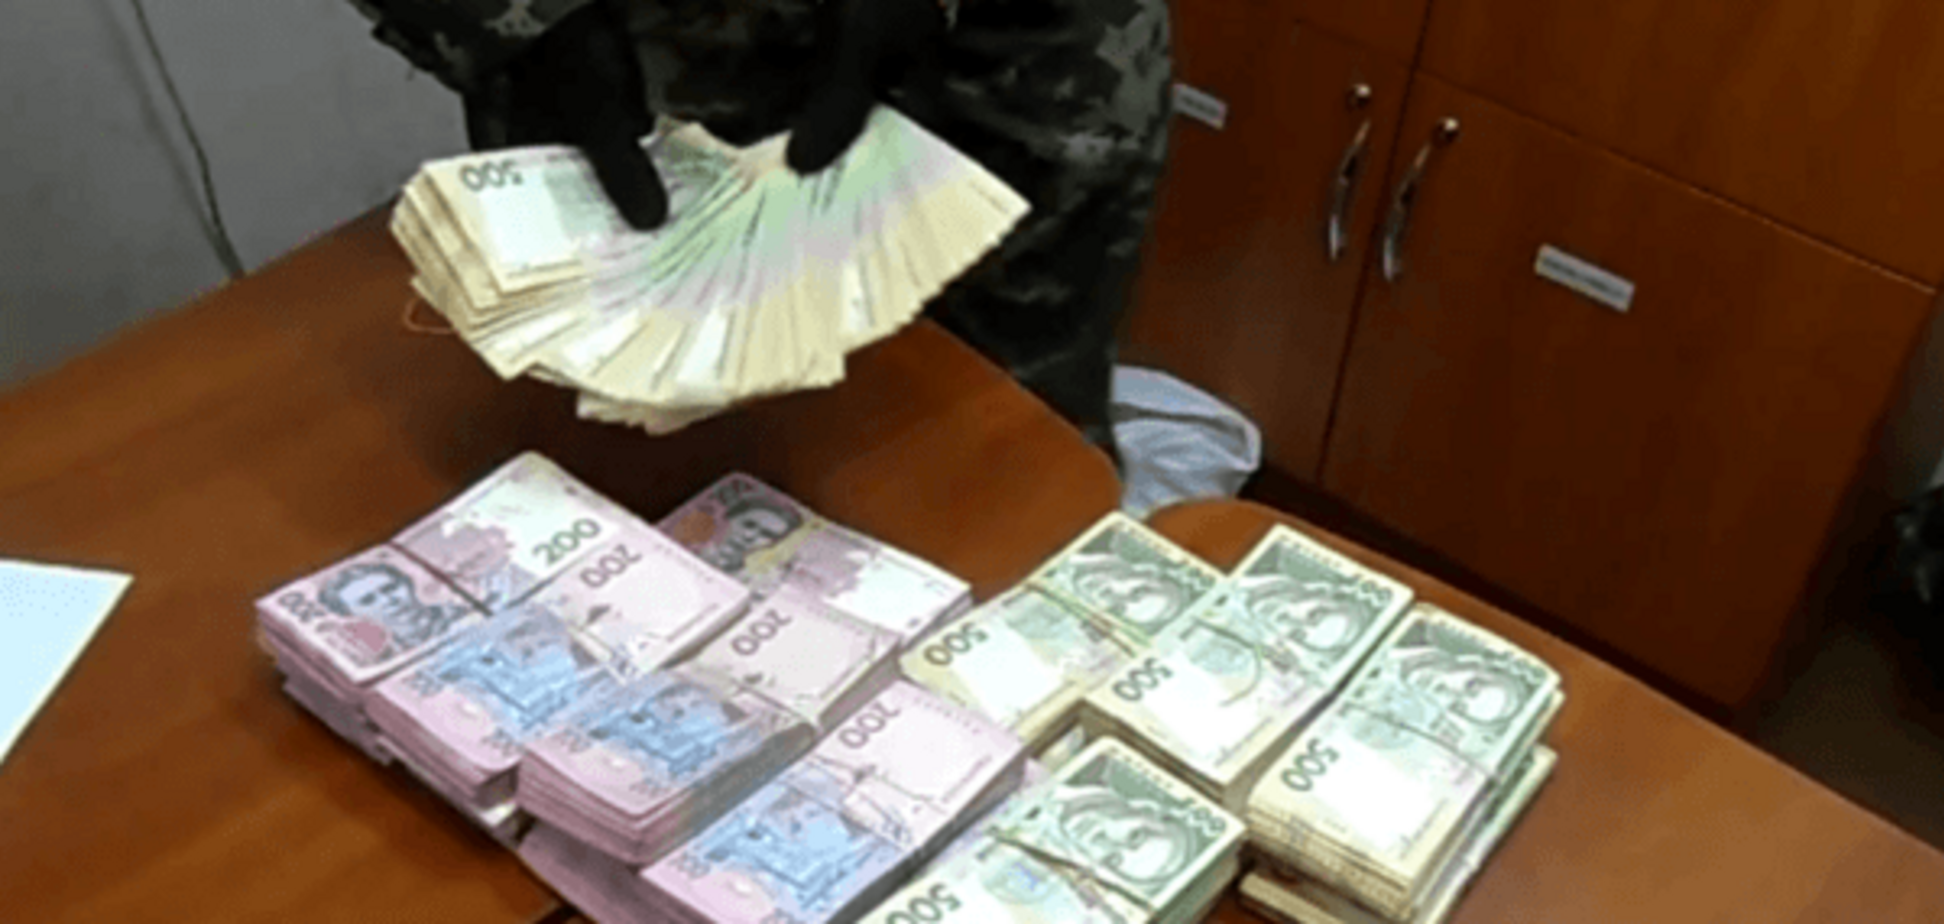 Пограничники задержали луганчанку, спрятавшую миллион гривен под бельем: видеофакт